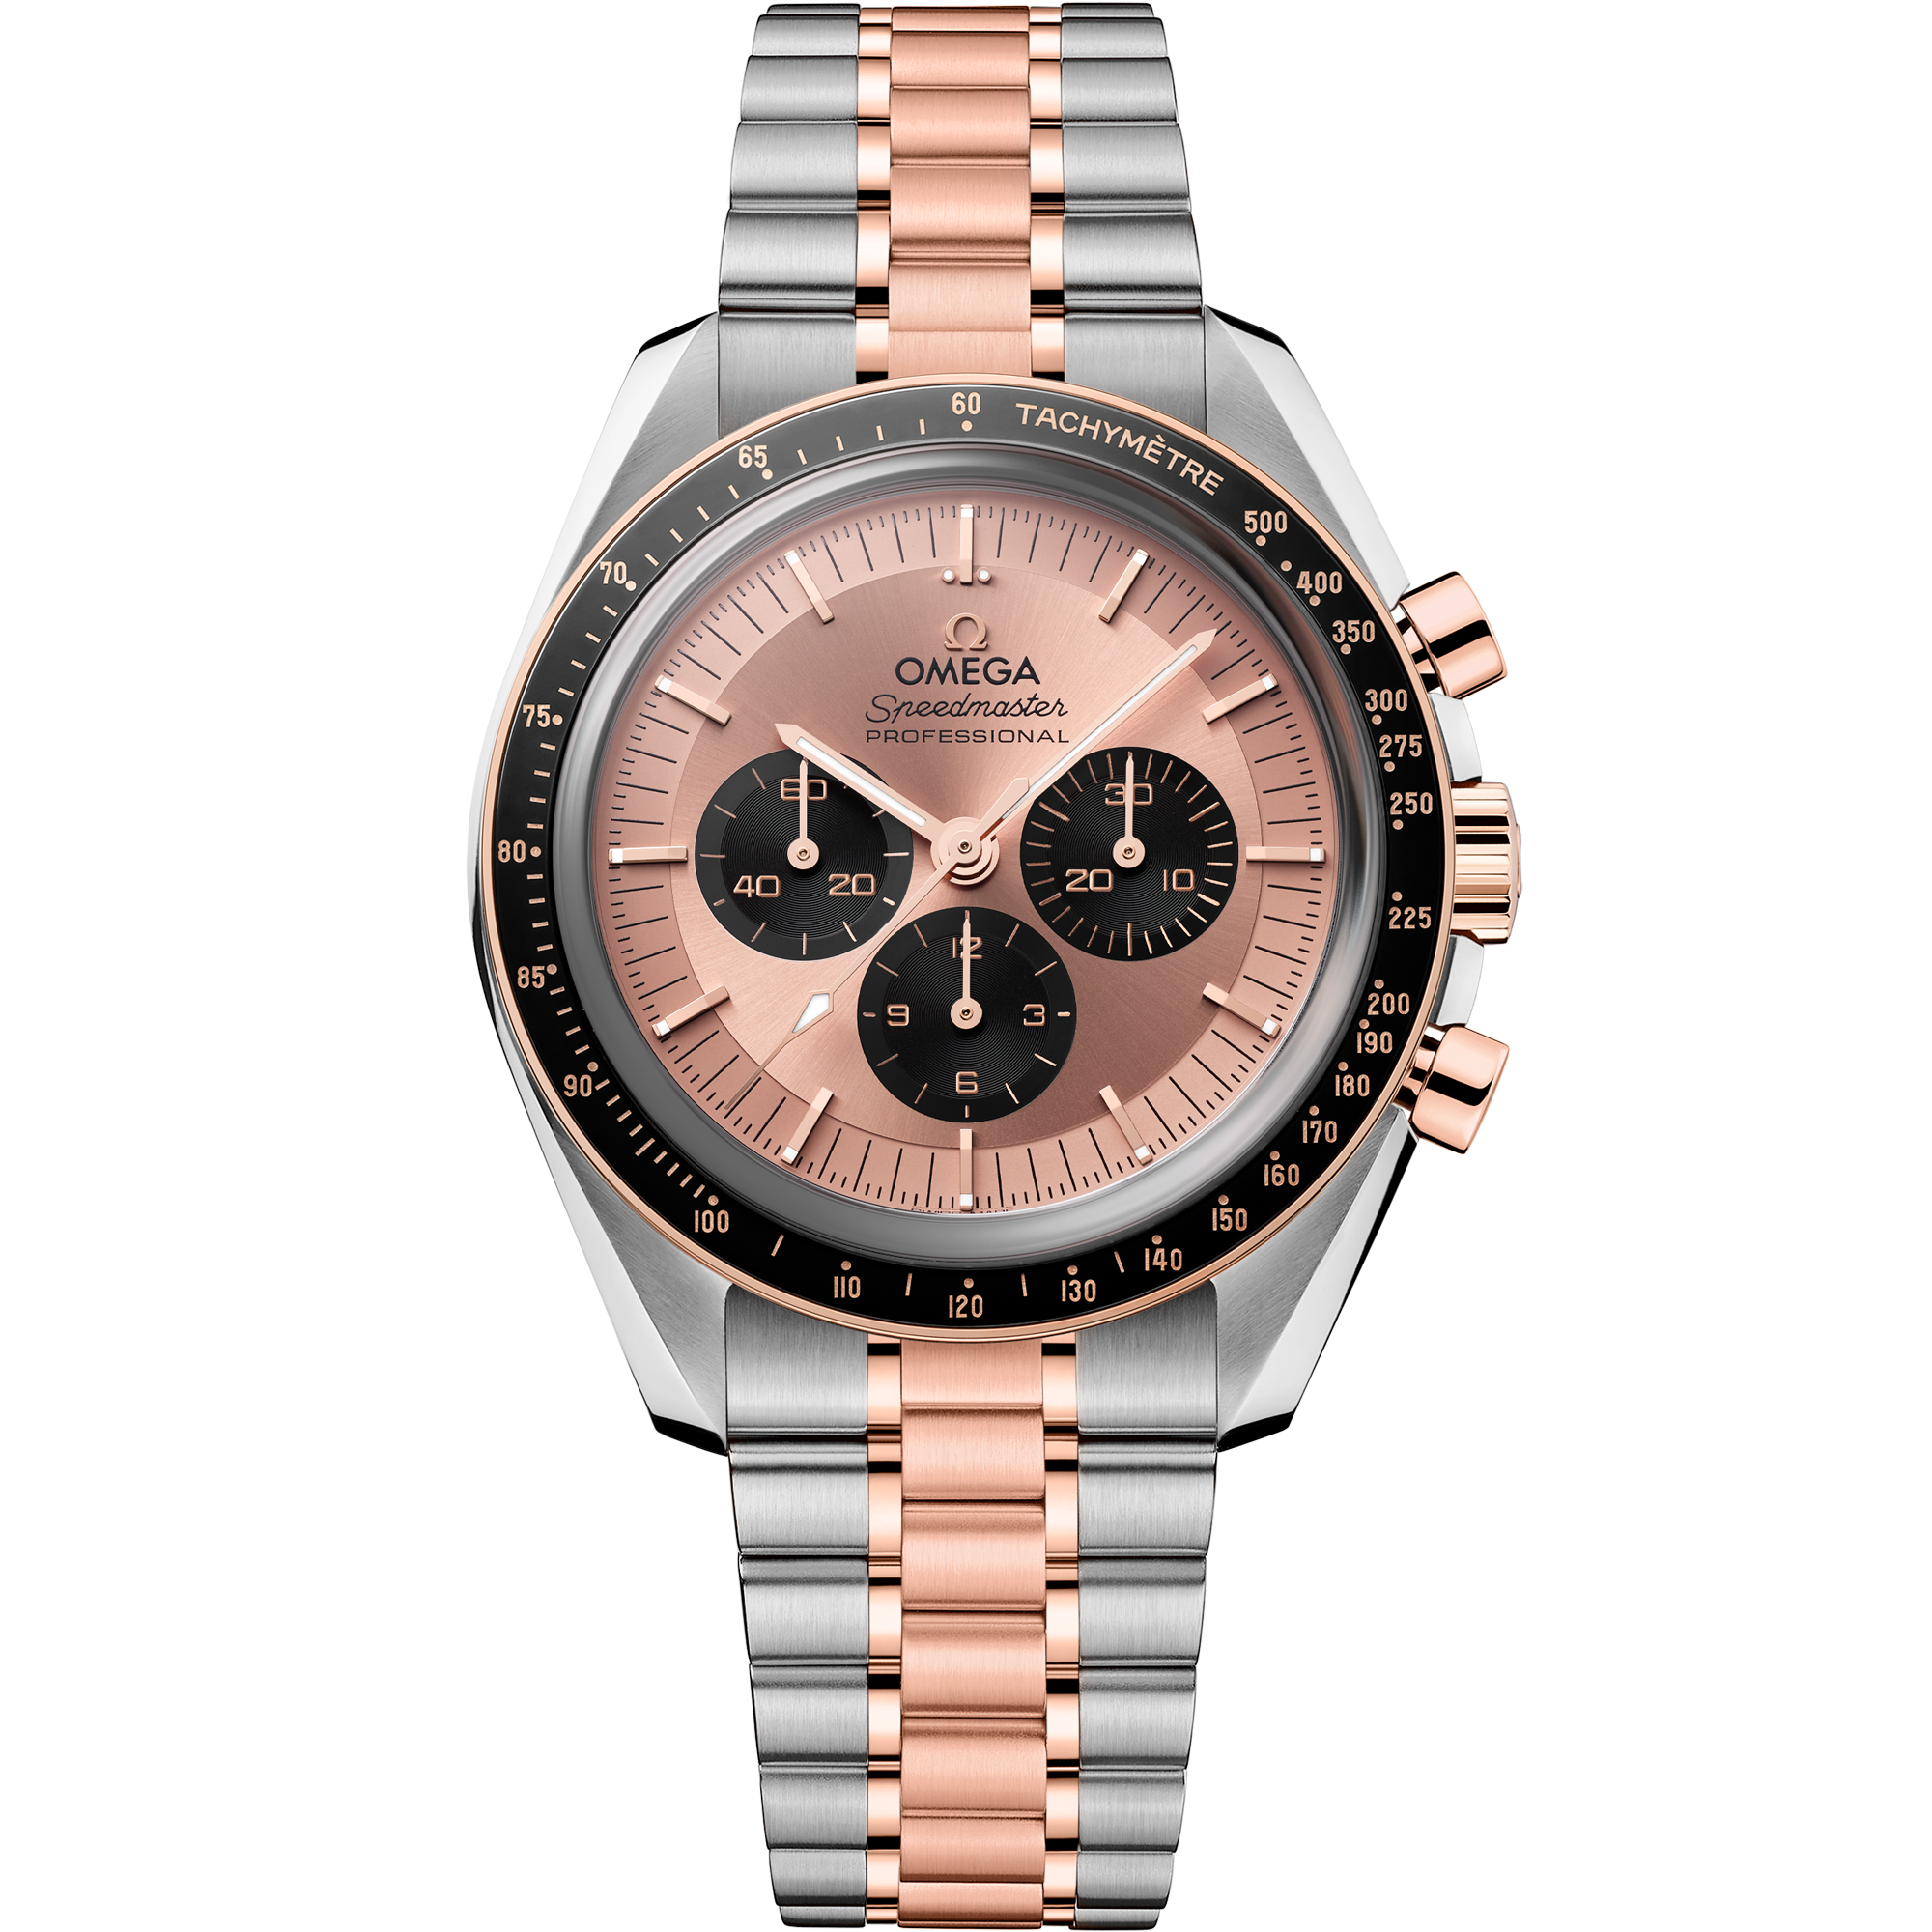 Uhr mit Pink Zifferblatt auf Stahl - Sedna™-Gold Gehäuse mit Stahl- und Sedna™-Goldband bracelet - Speedmaster Moonwatch Professional 42 mm, Stahl - Sedna™-Gold mit Stahl- und Sedna™-Goldband - 310.20.42.50.99.001